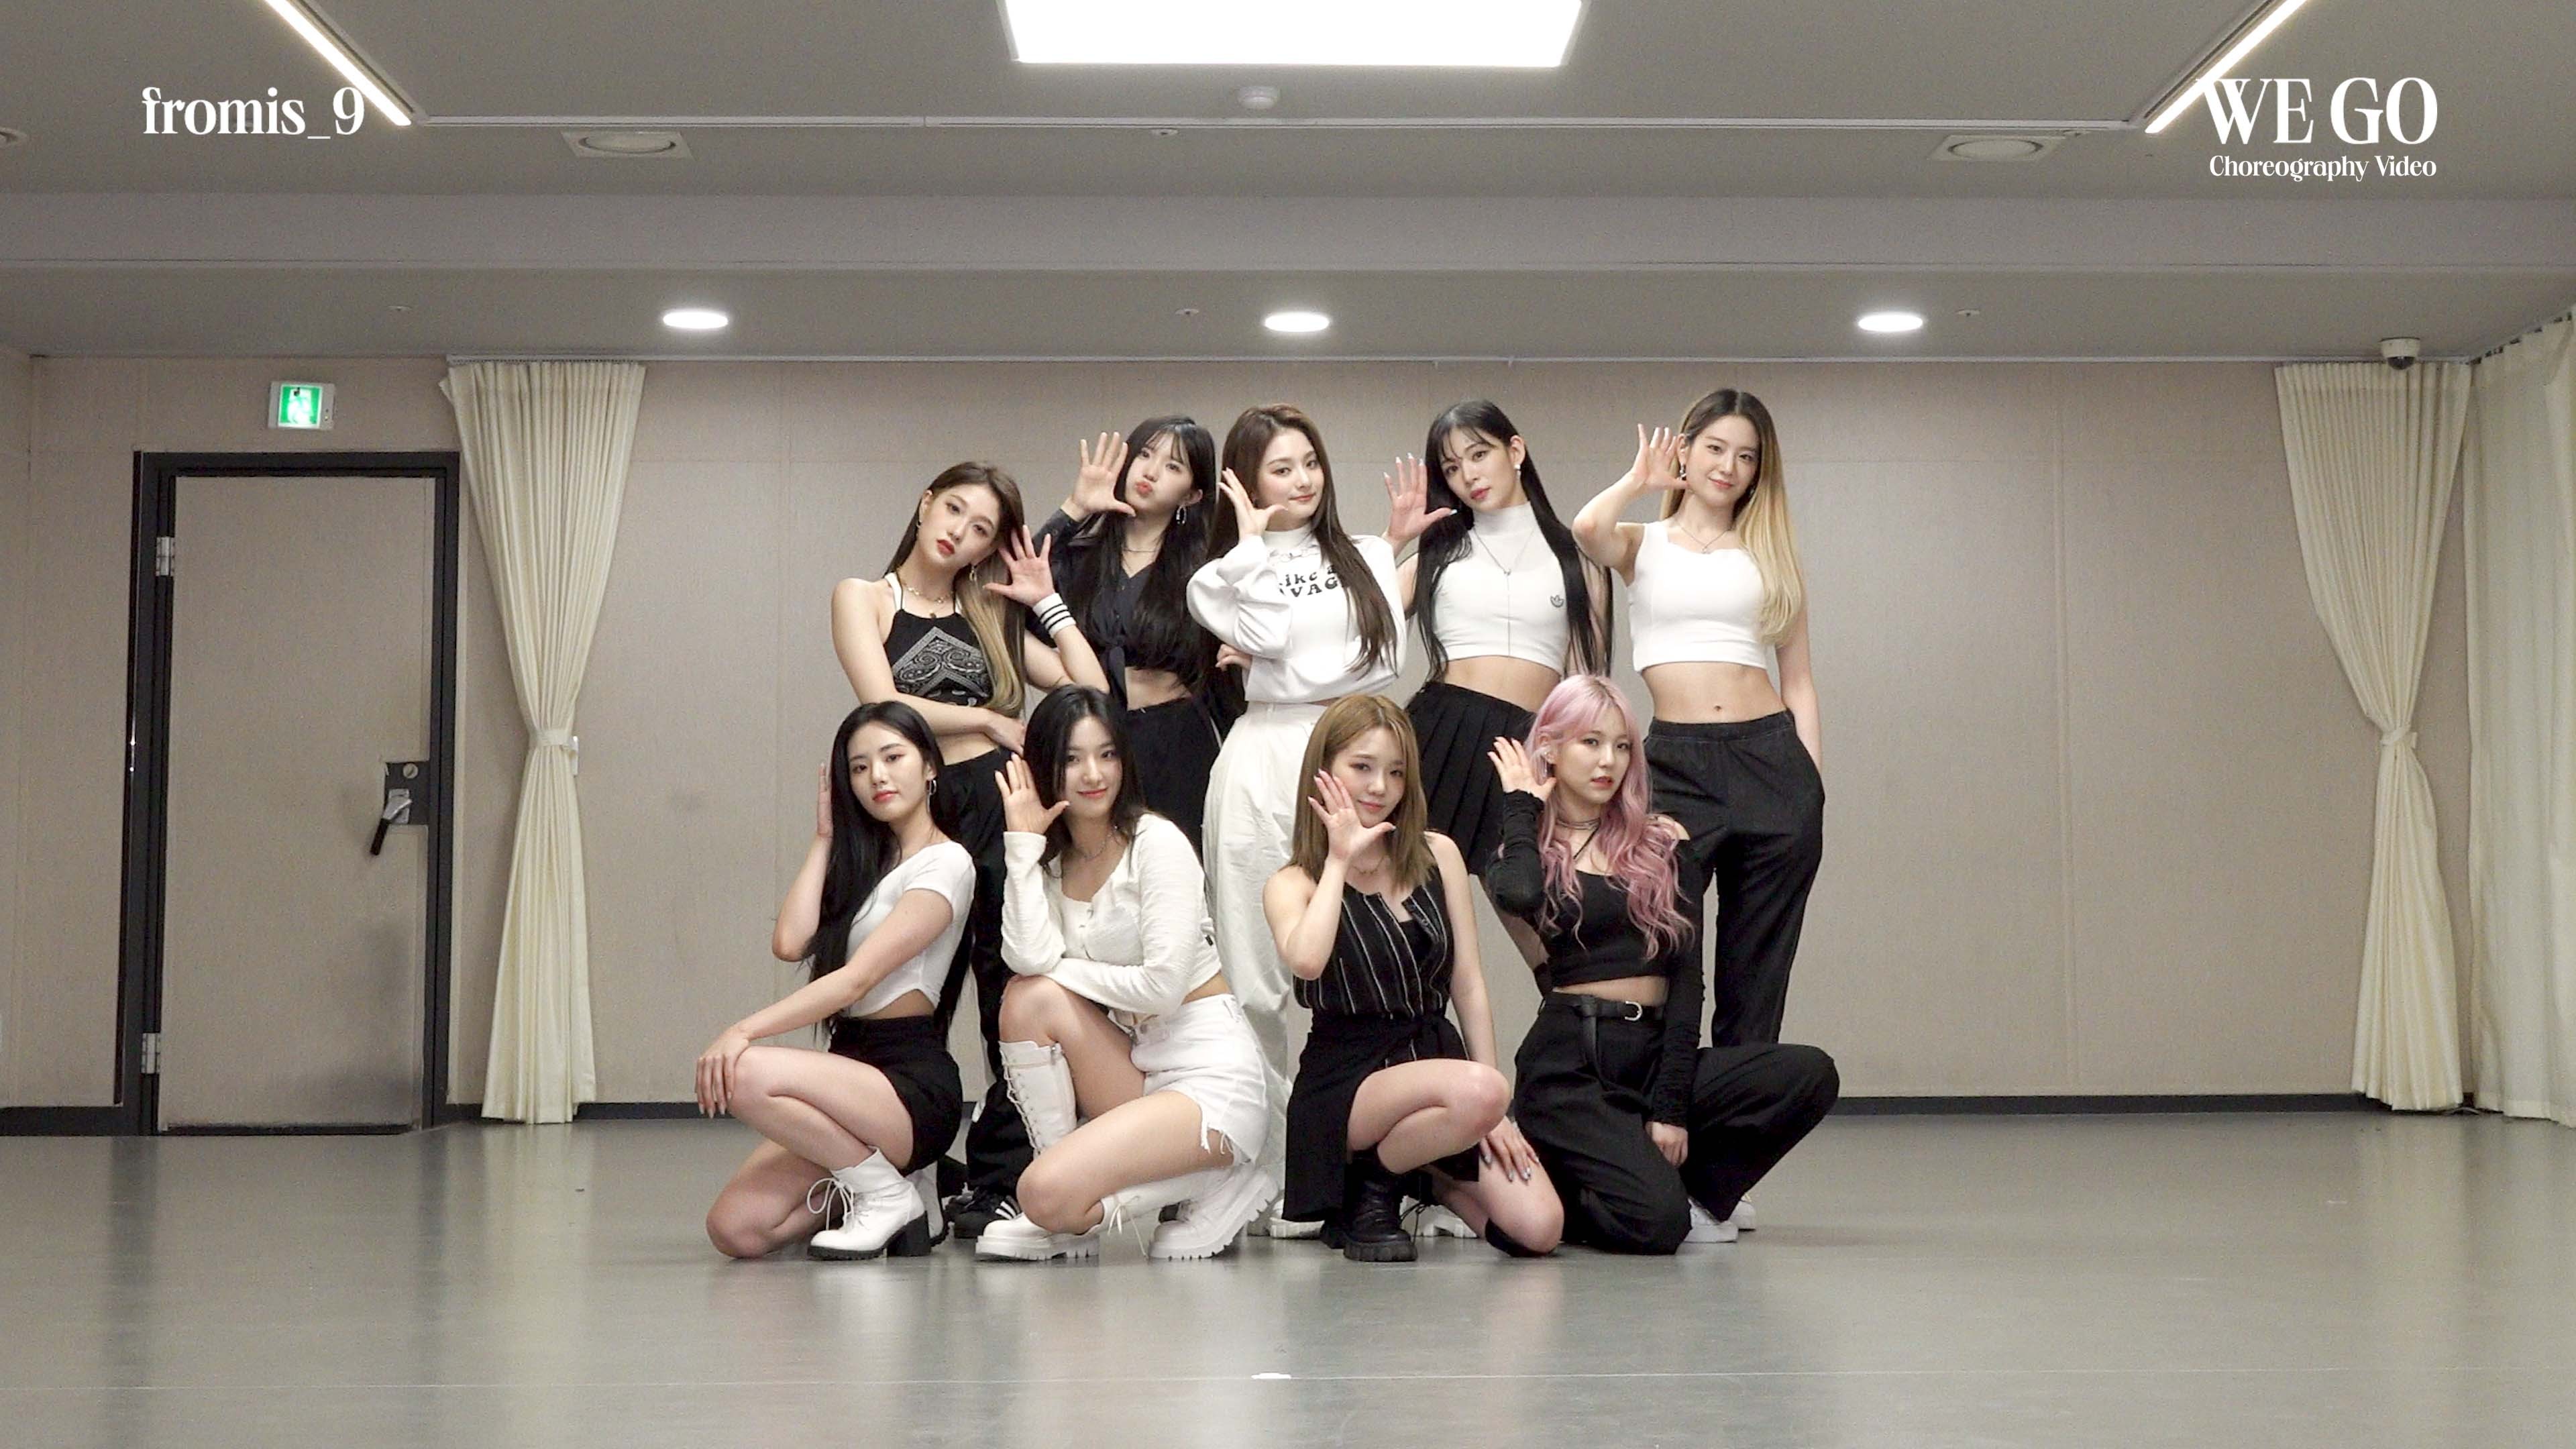 프로미스나인 (fromis_9) 'WE GO' Choreography Video